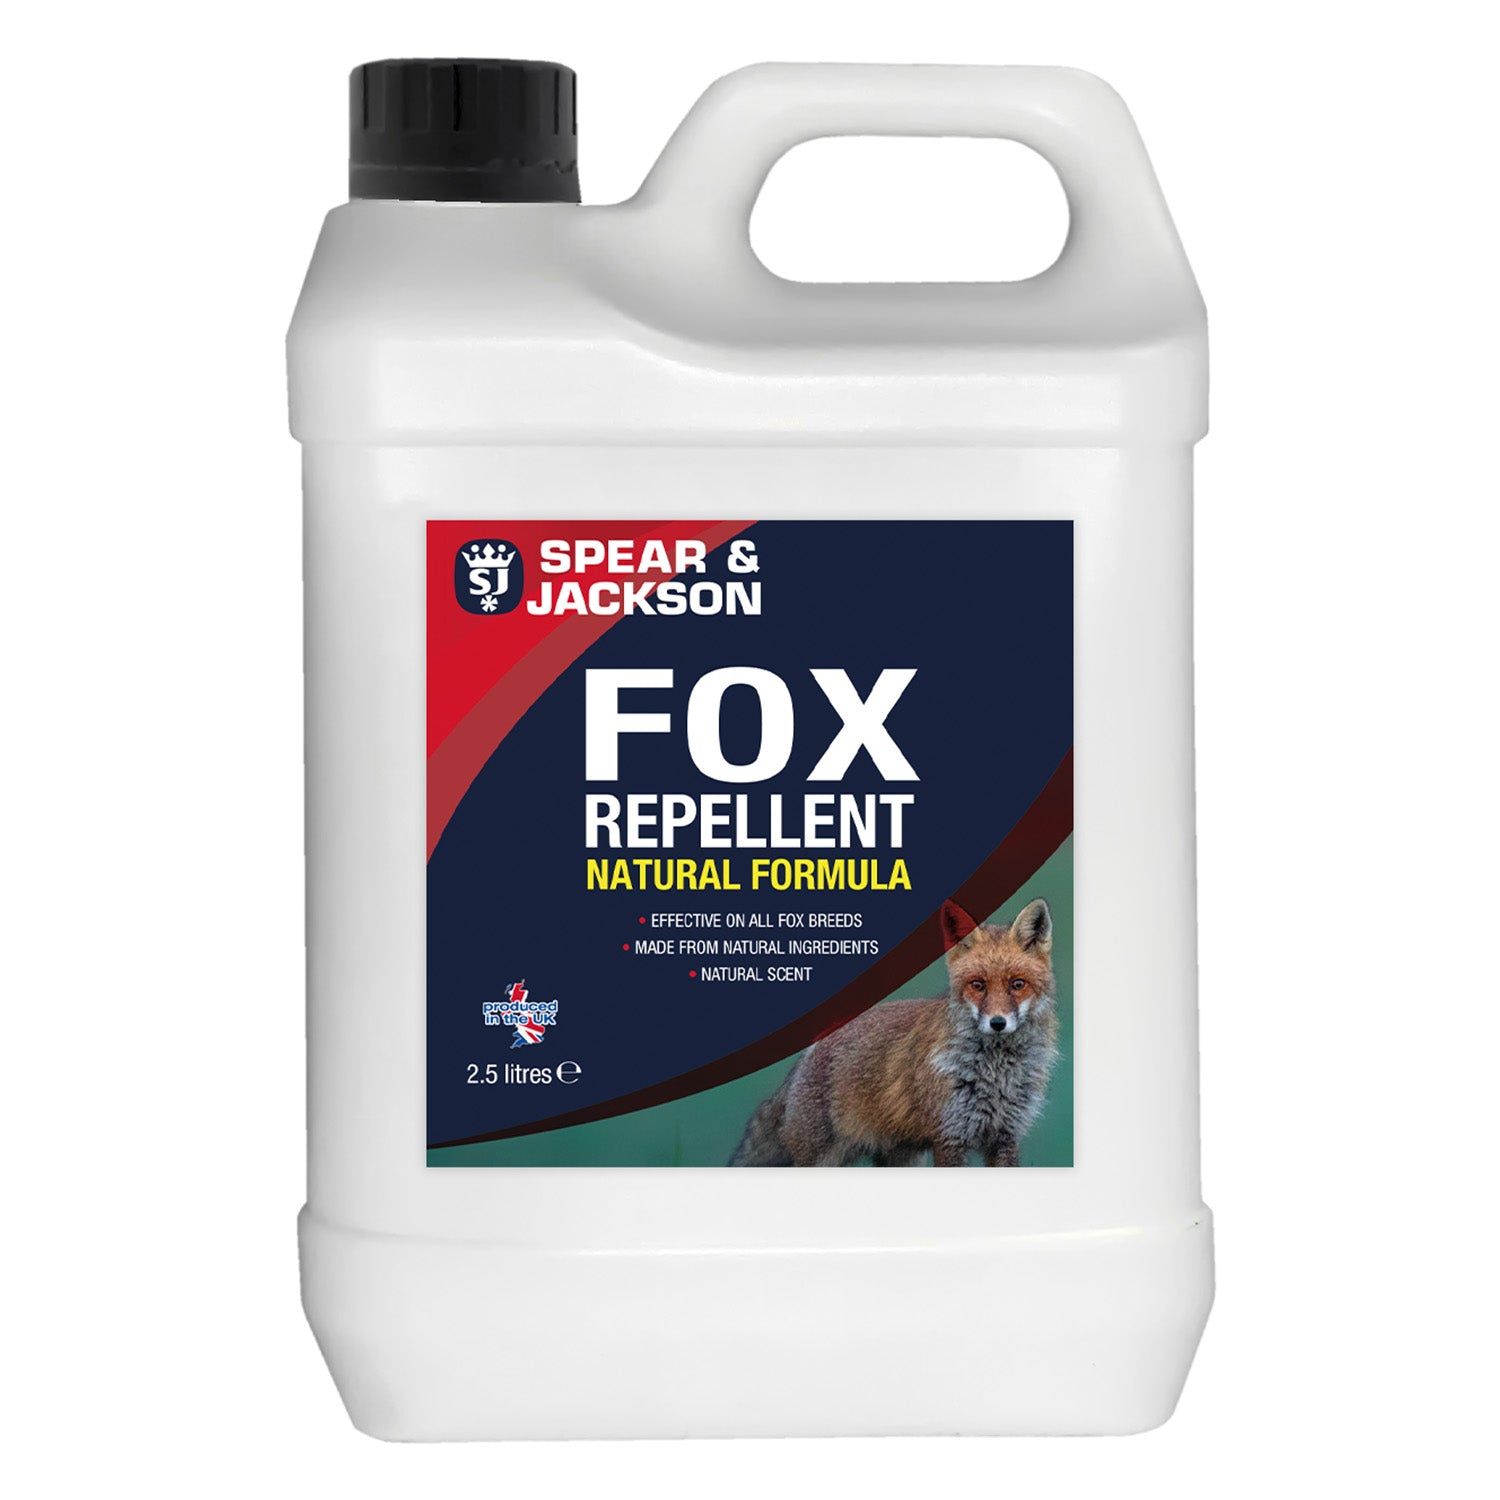 Spear & Jackson Fox Repellent - 2.5L plus Long Hose Trigger